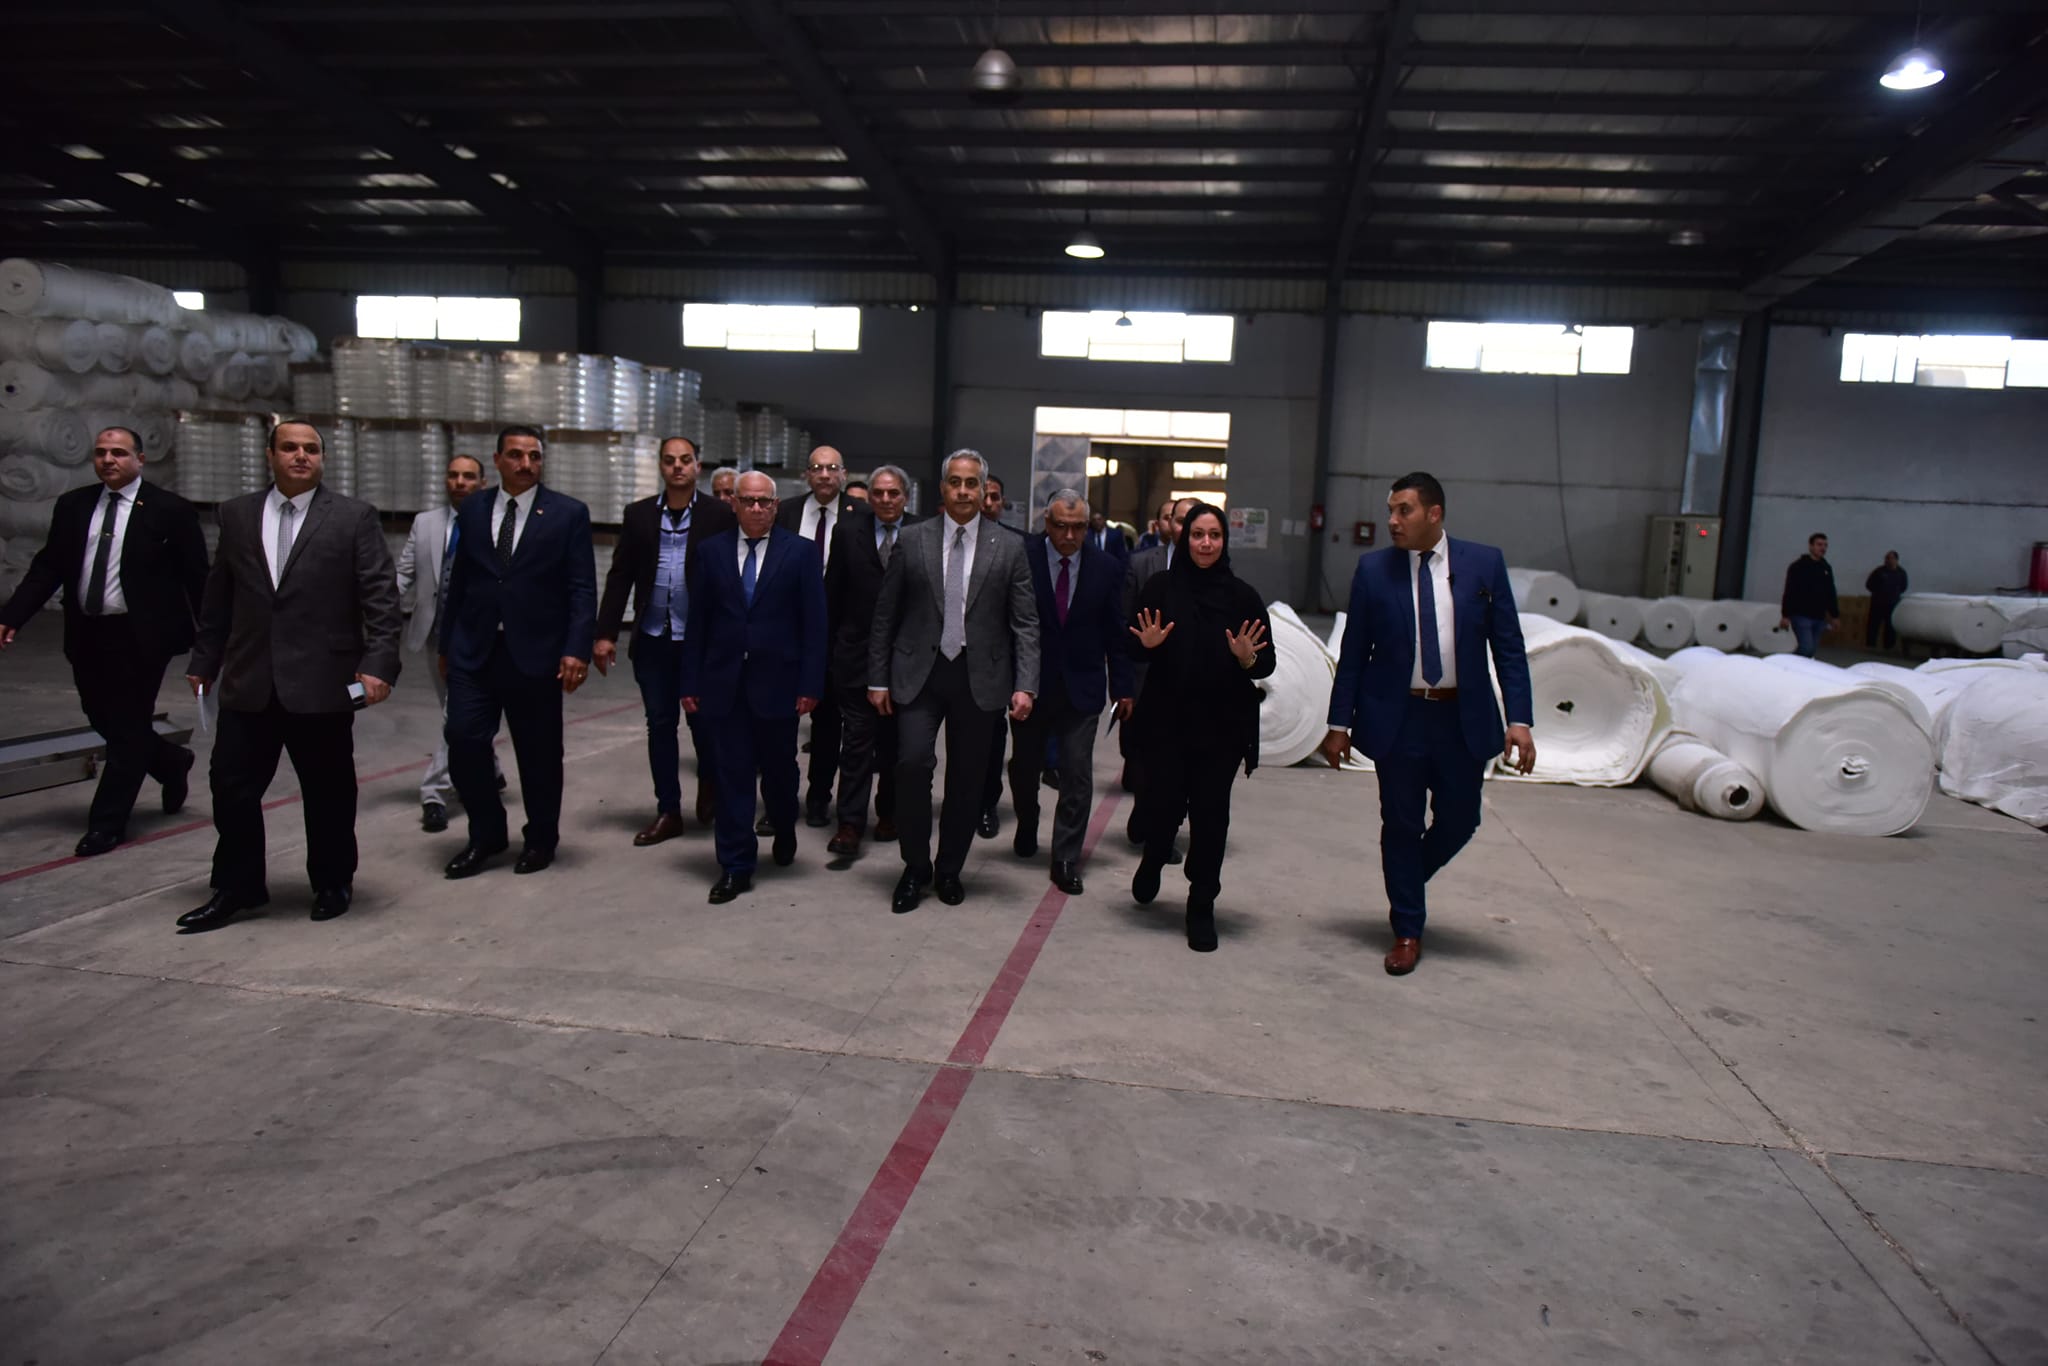 وزير العمل يصطحب محافظ بورسعيد لجولة داخل مصنع للبطاطين والسجاد والملابس الجاهزة (صور) 5